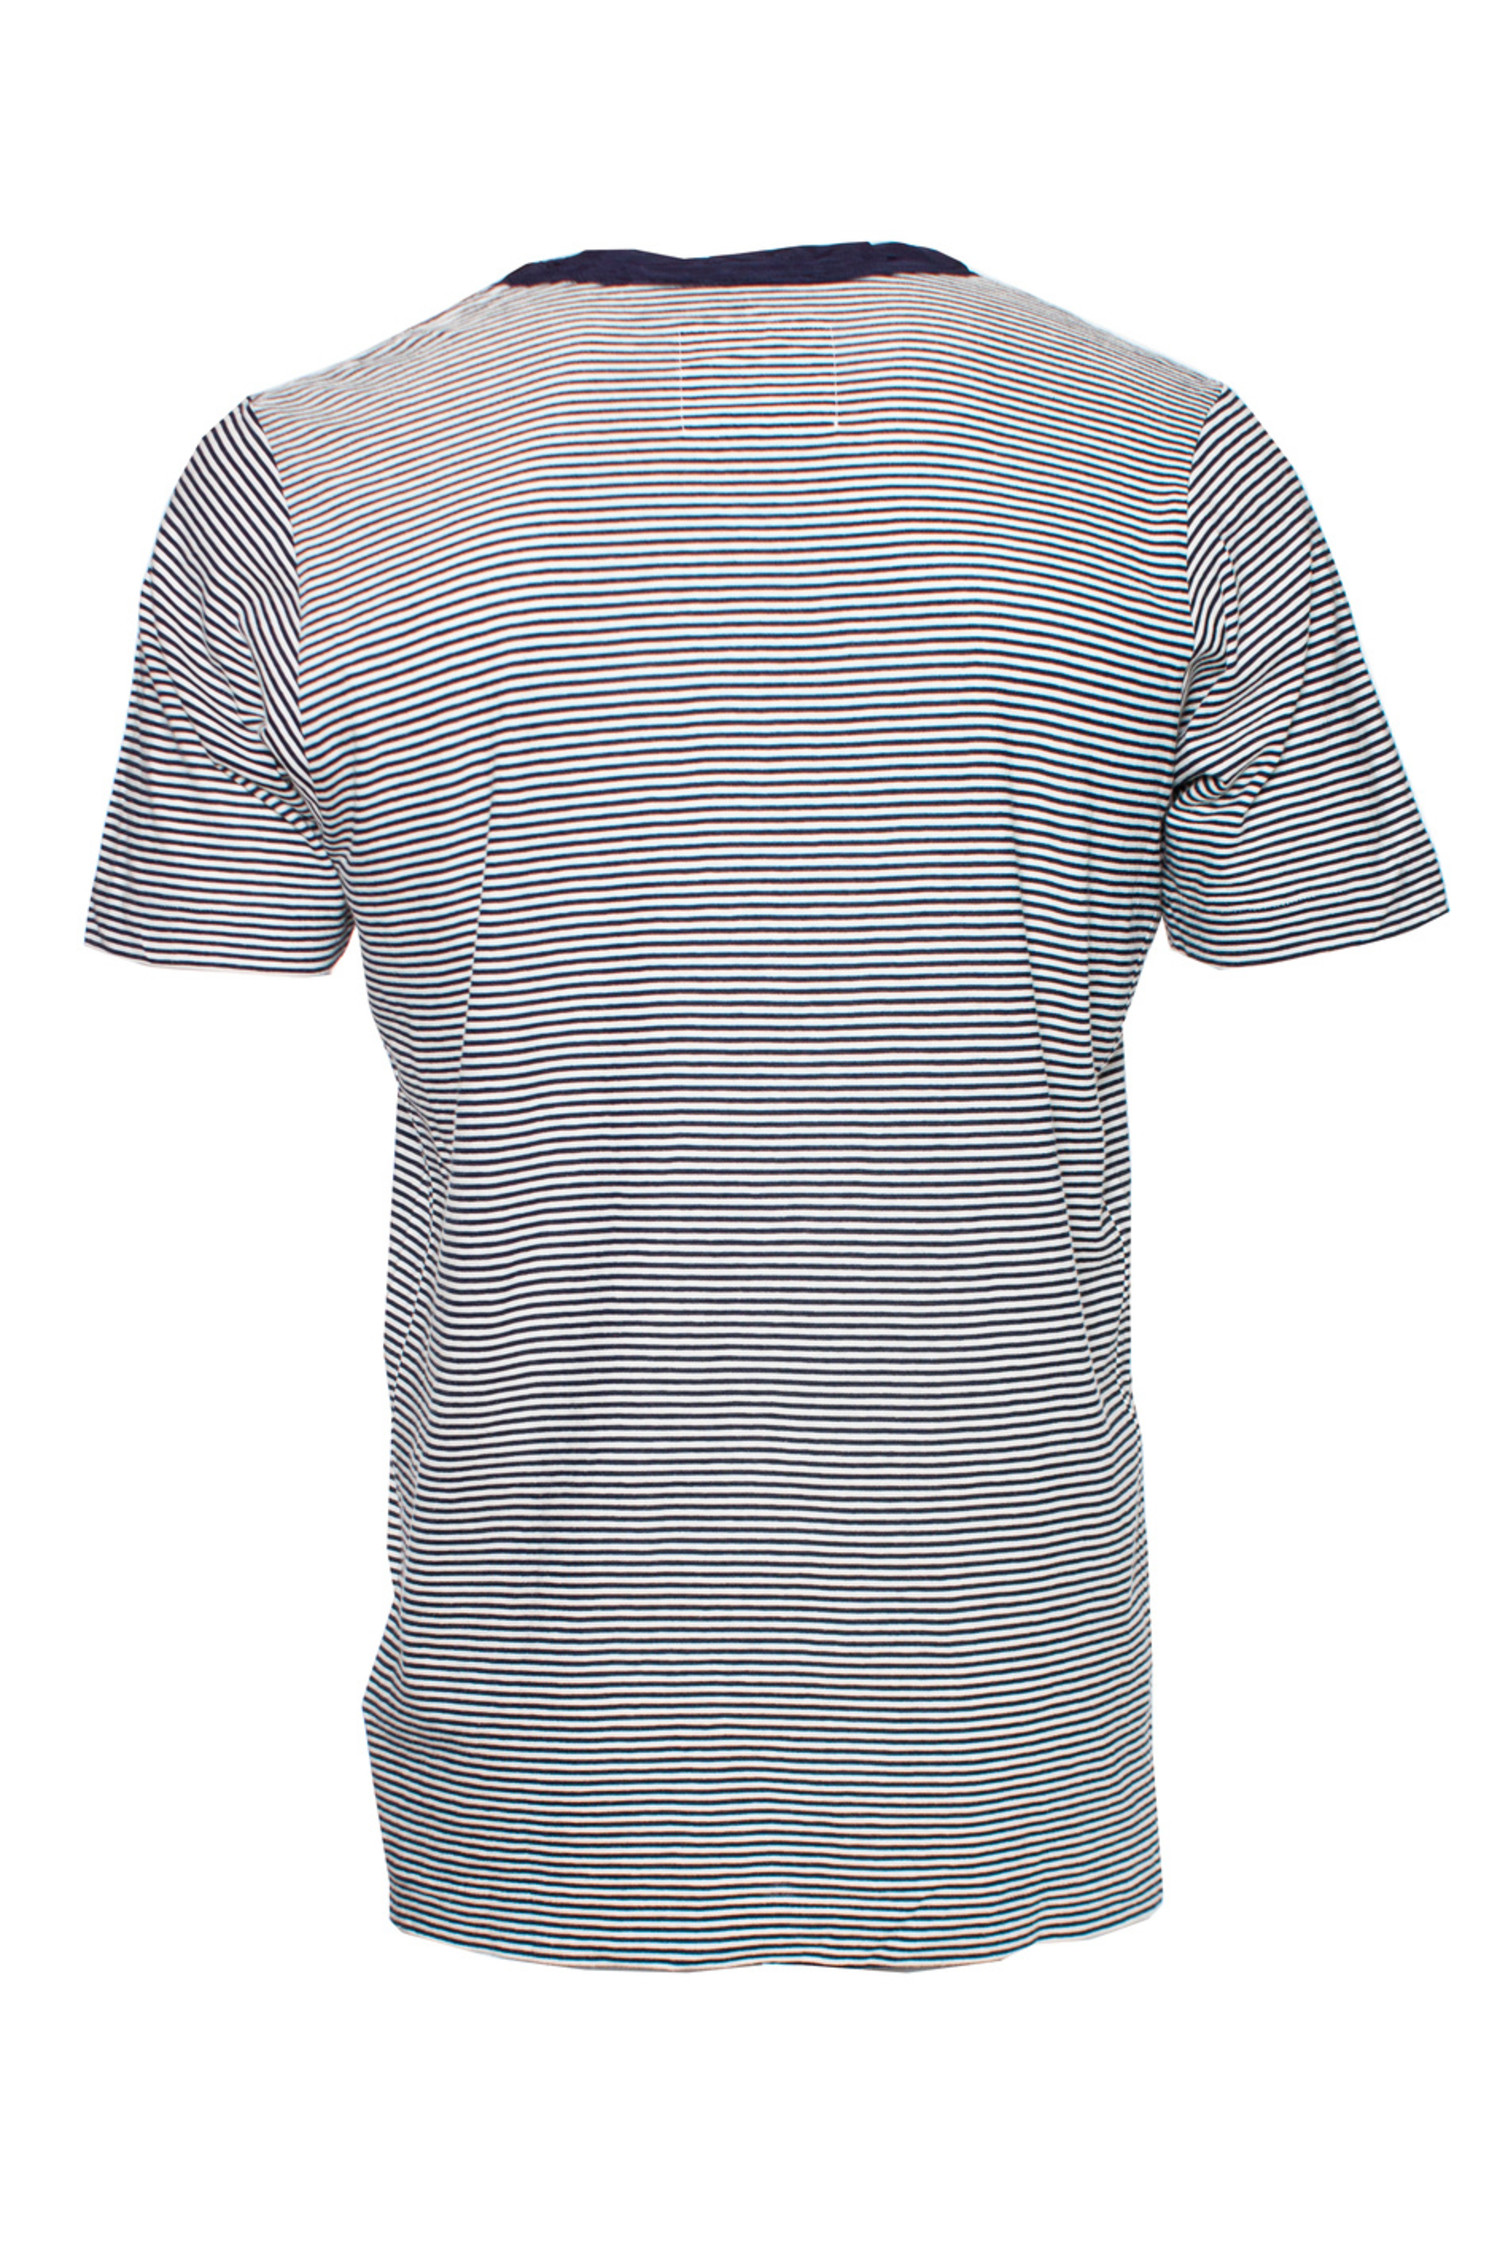 Sacai, Blue and white striped T-shirt - Unique Designer Pieces